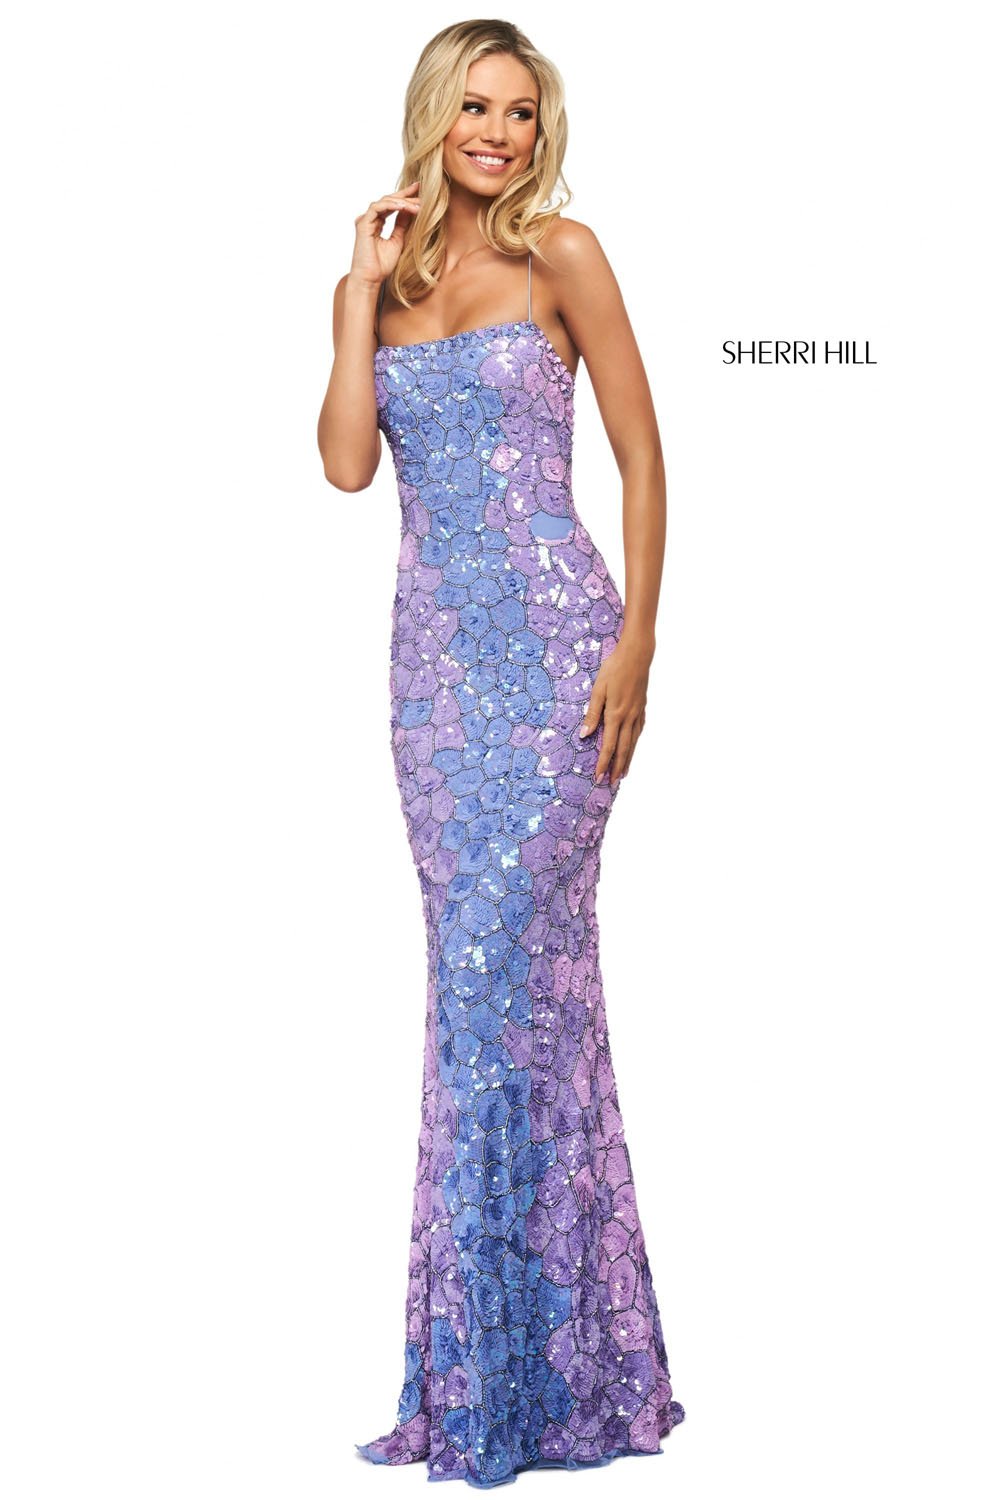 Sherri Hill 53819 Dress | Formal ...